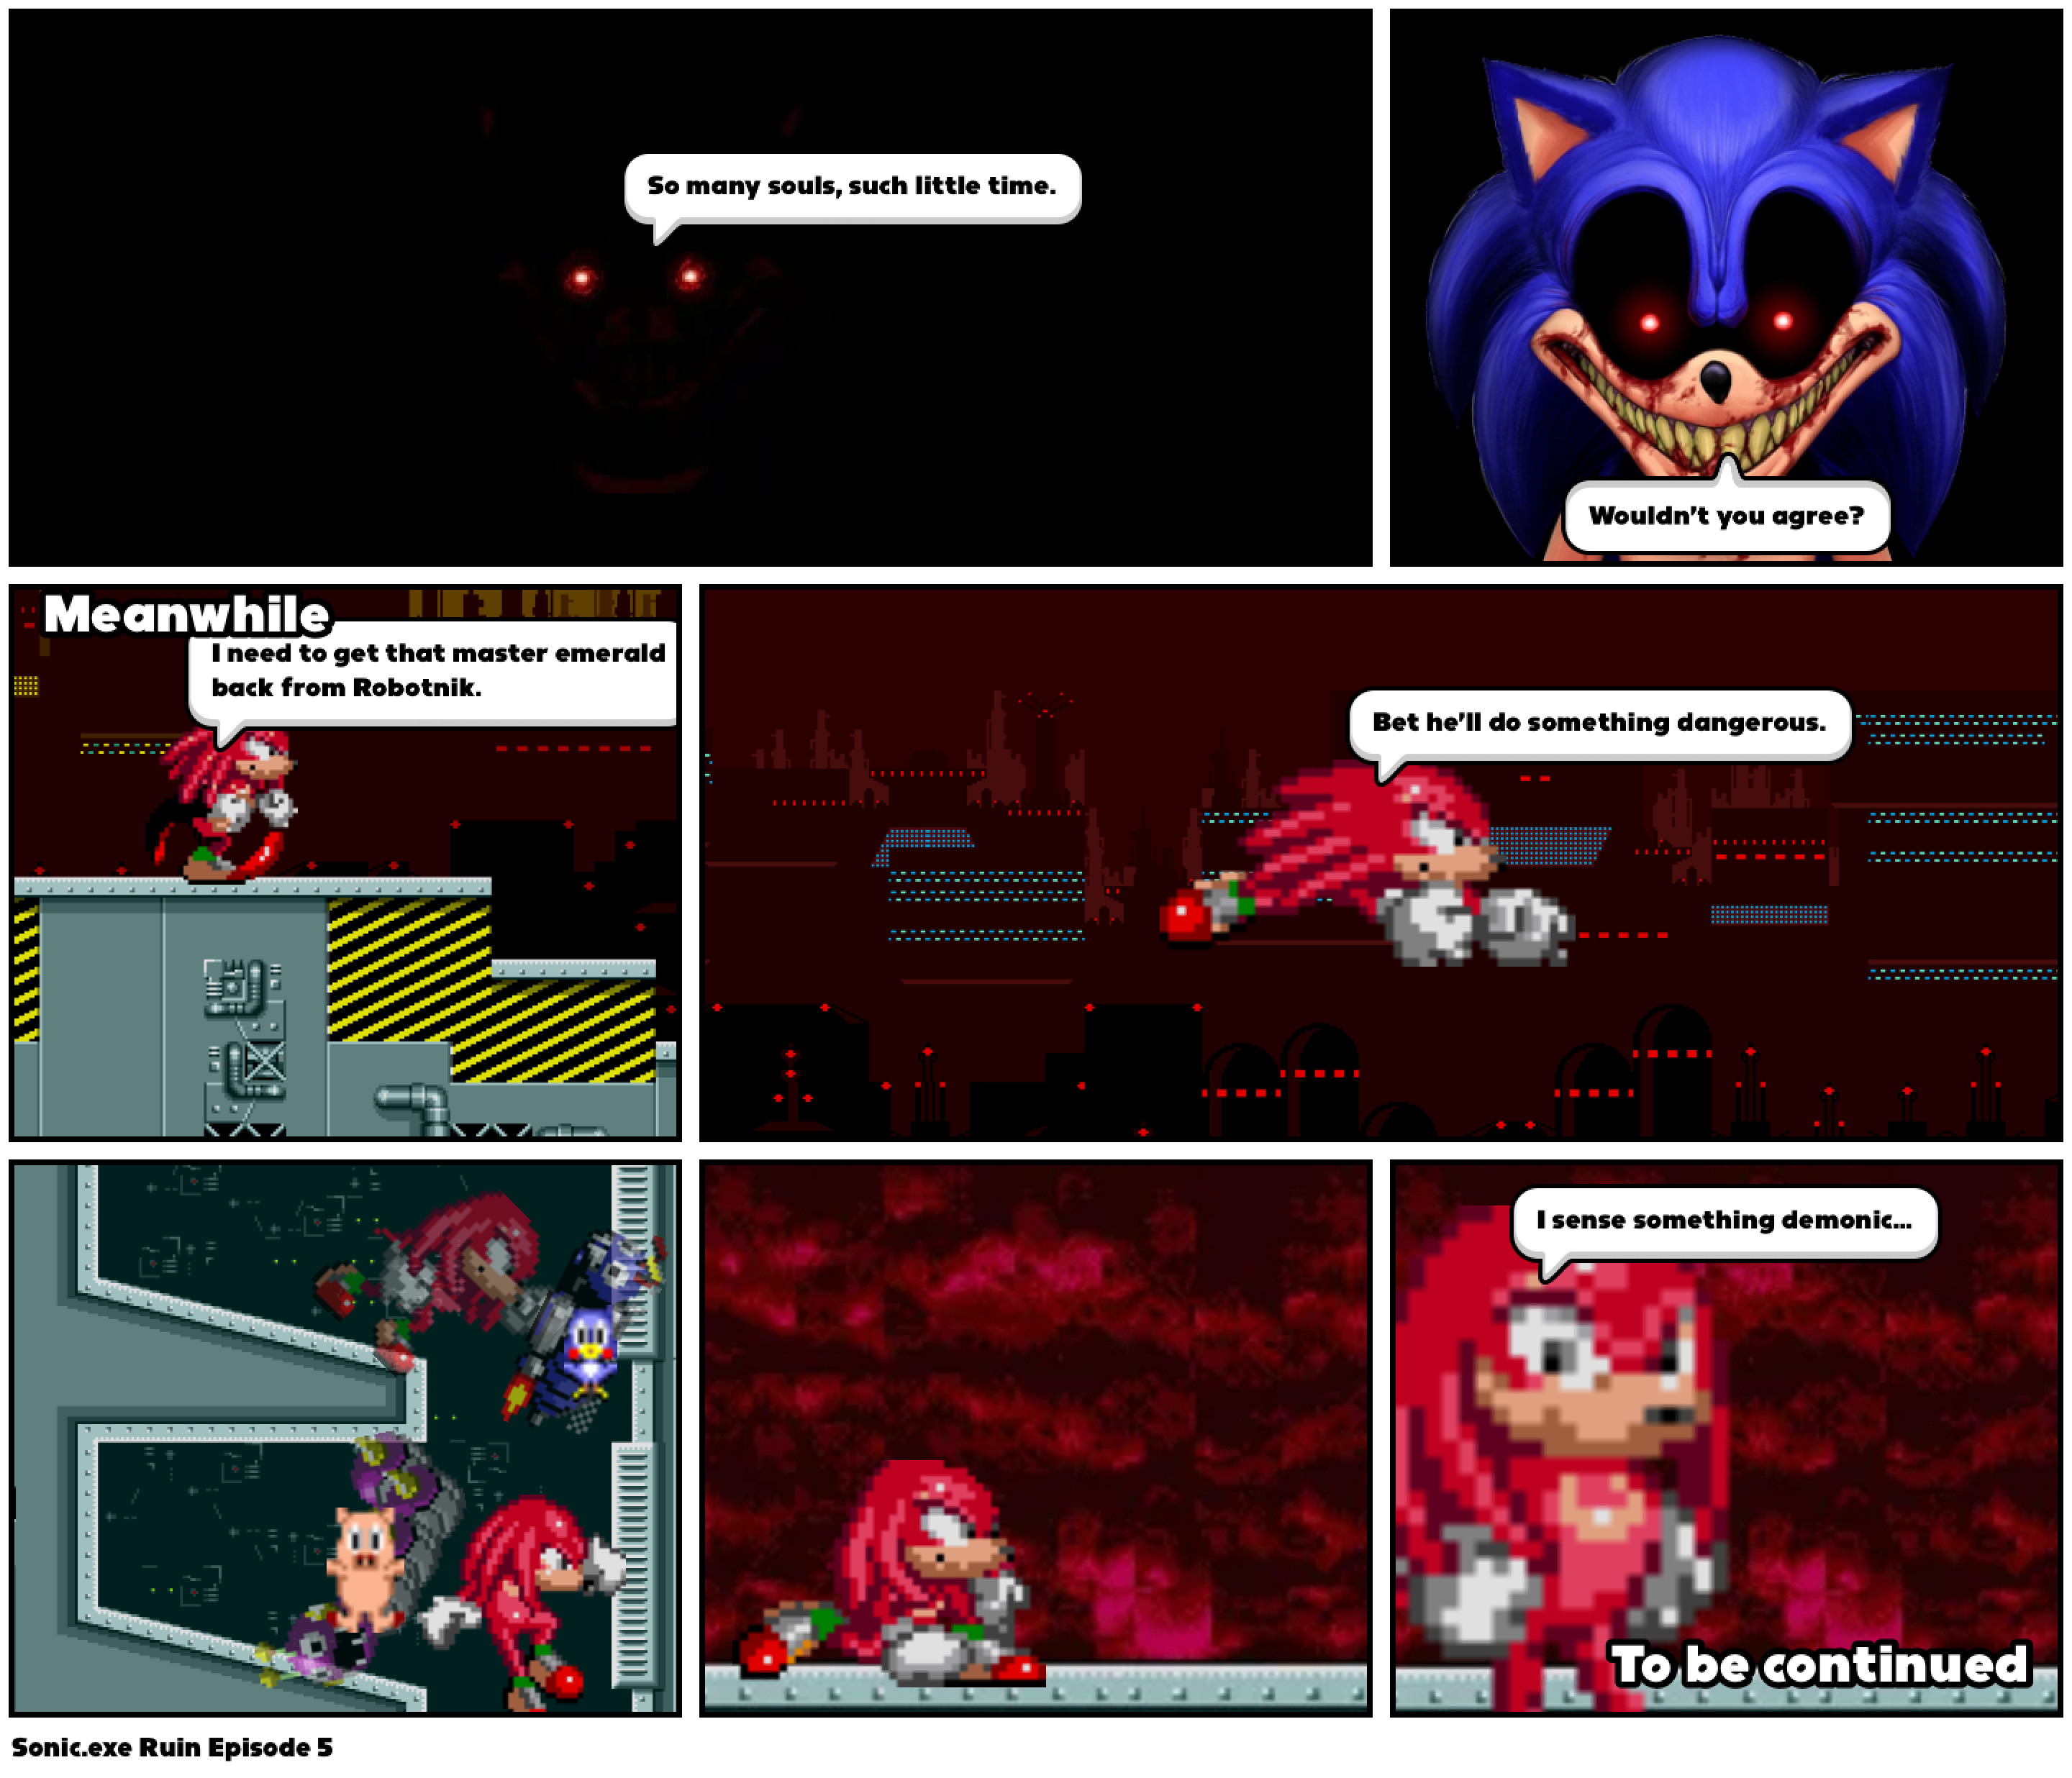 Sonic.exe Ruin Episode 5